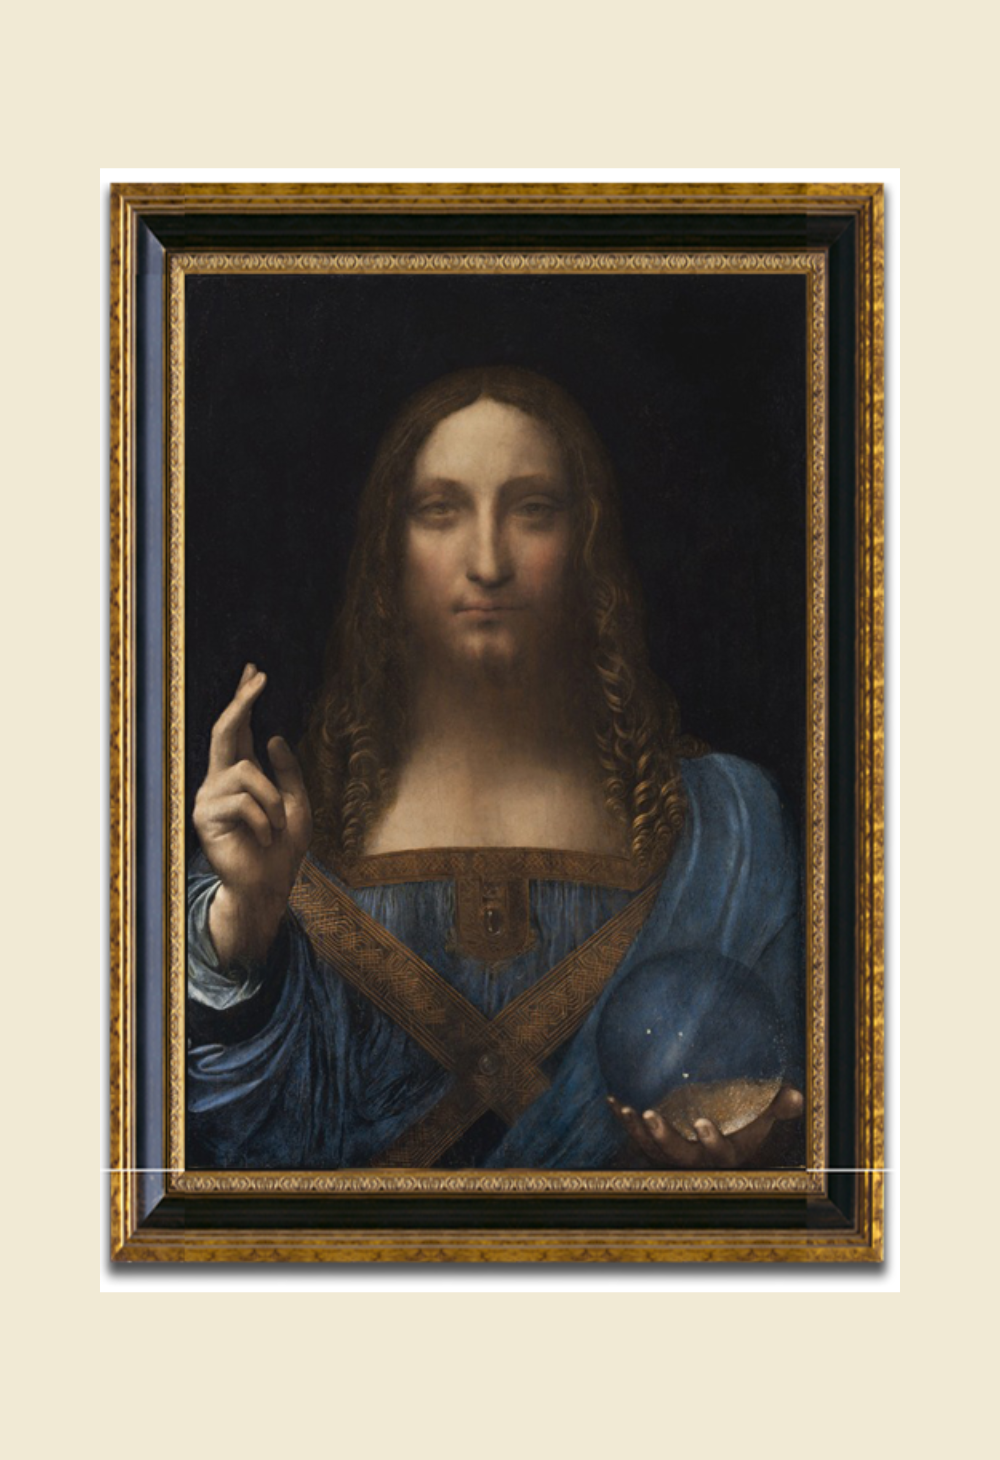 Salvator Mundi Art by Leonardo Da Vinci